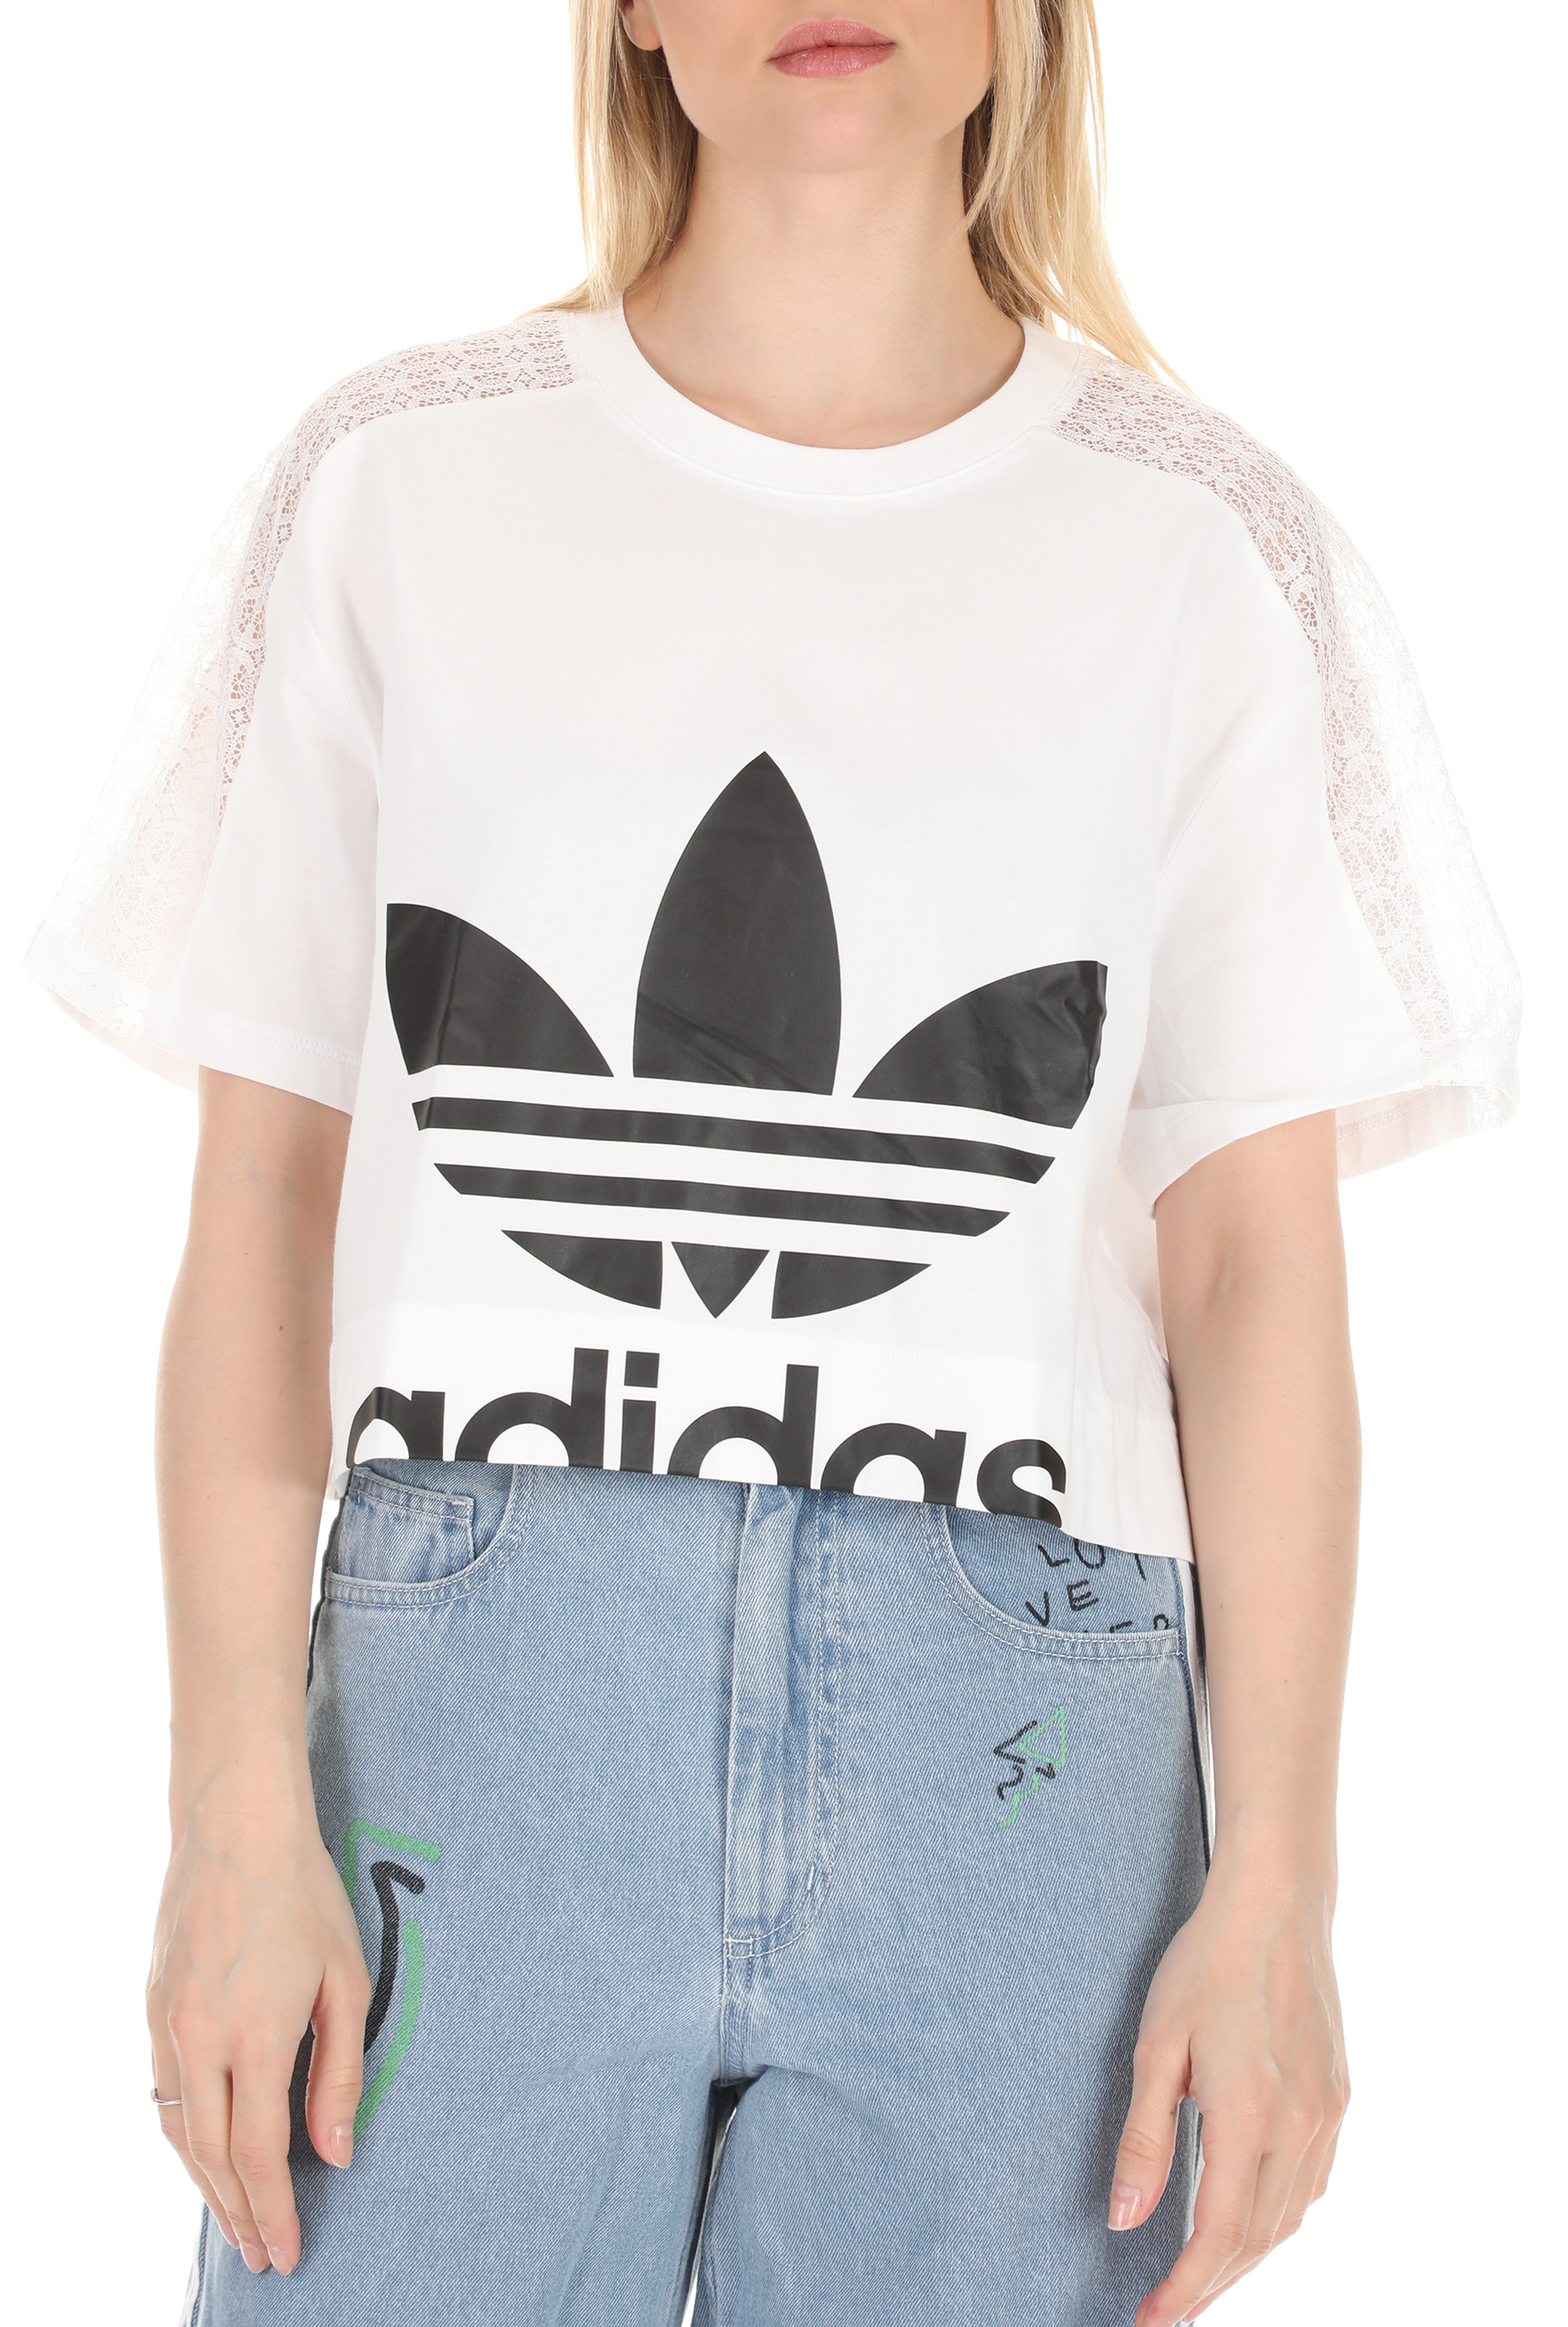 Γυναικεία/Ρούχα/Αθλητικά/T-shirt-Τοπ adidas Originals - Γυναικείο cropped t-shirt adidas Originals λευκό